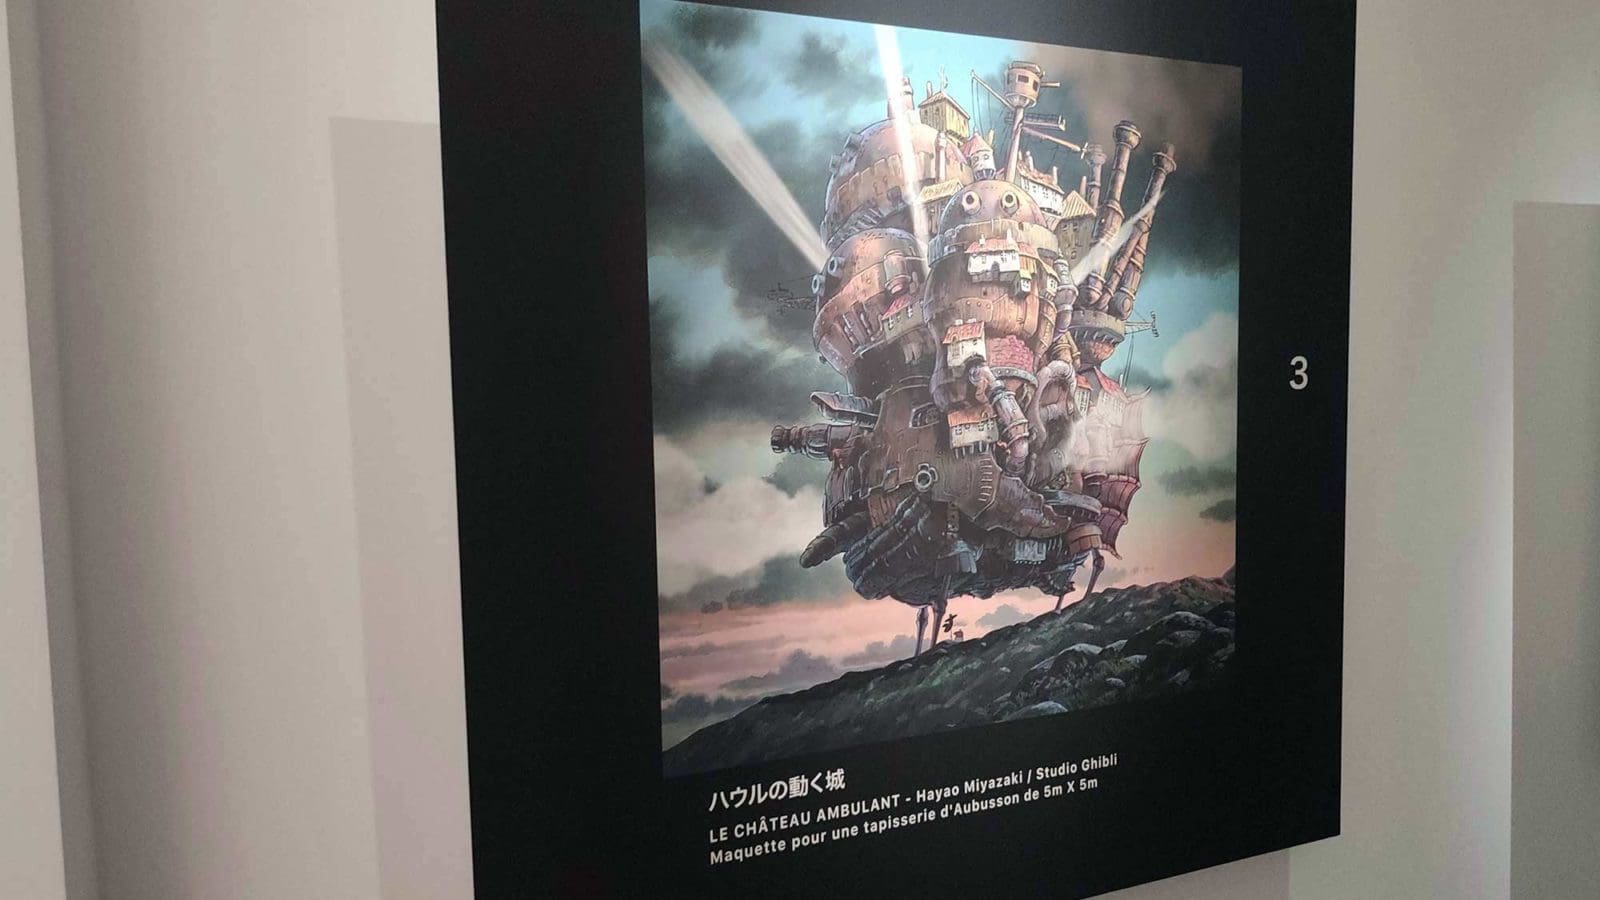 Une gigantesque tapisserie inspirée de l'univers de Miyazaki  exceptionnellement présentée cet été à Paris